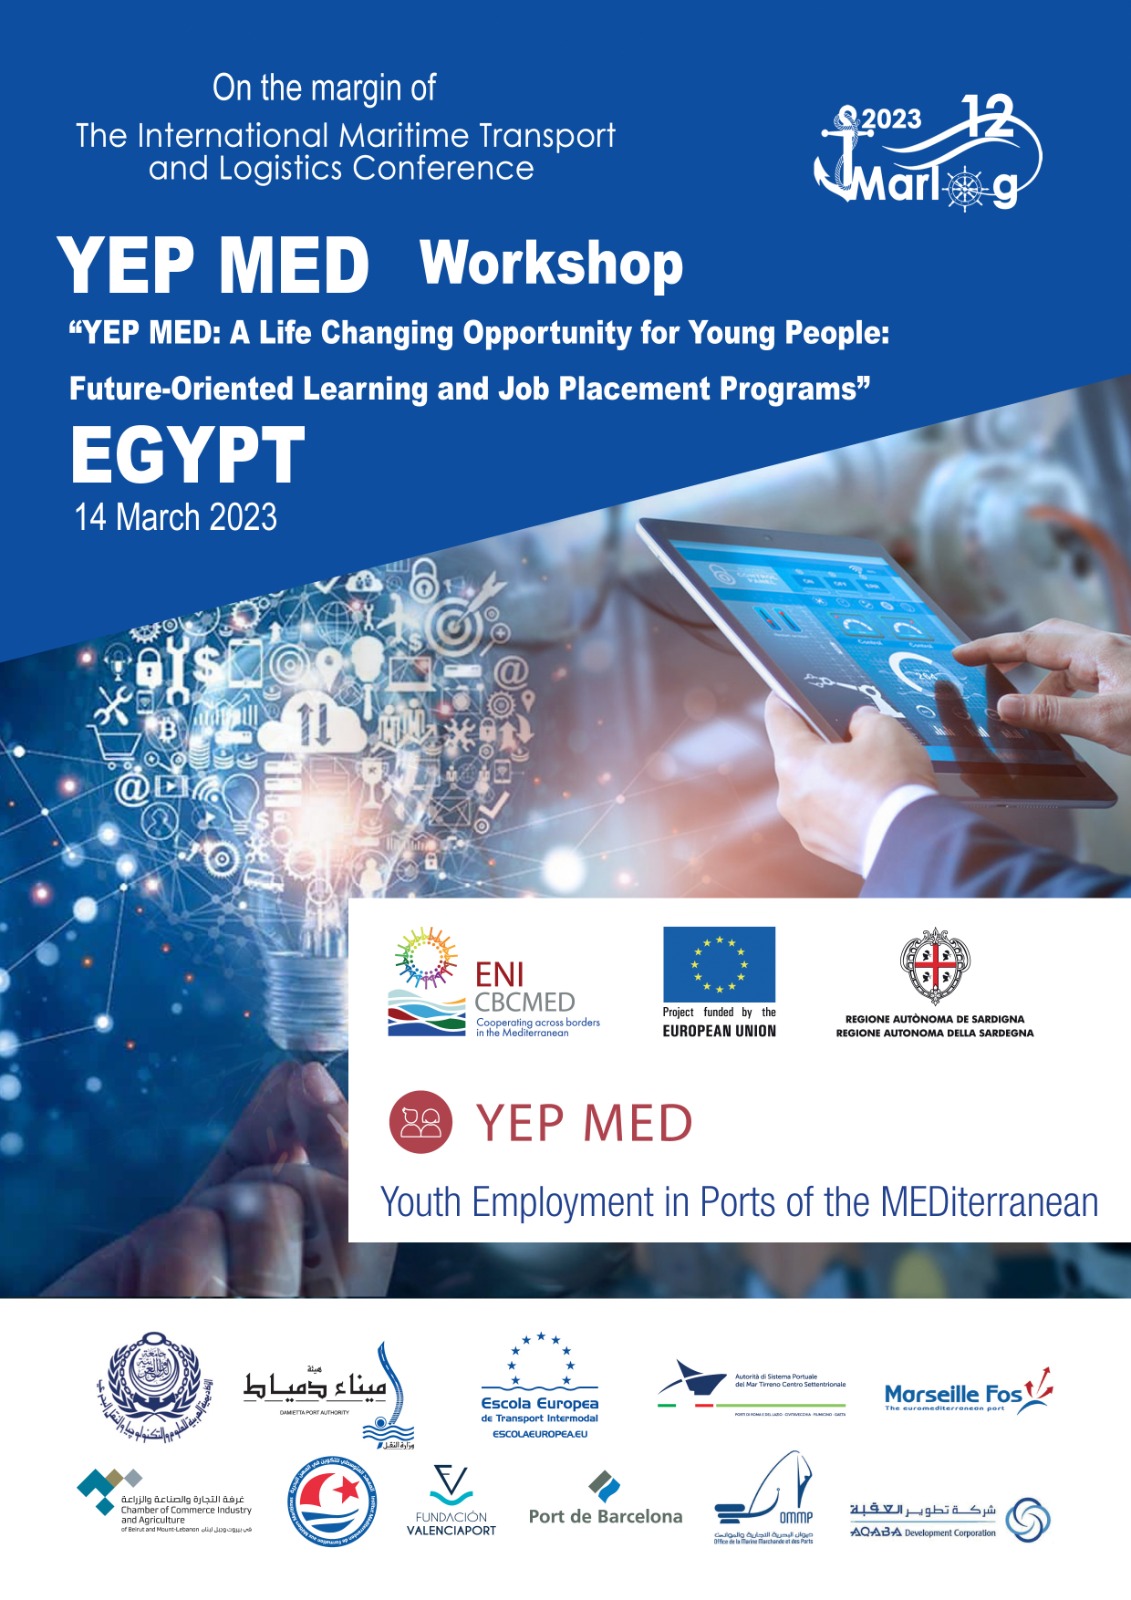 YEPMED Workshop